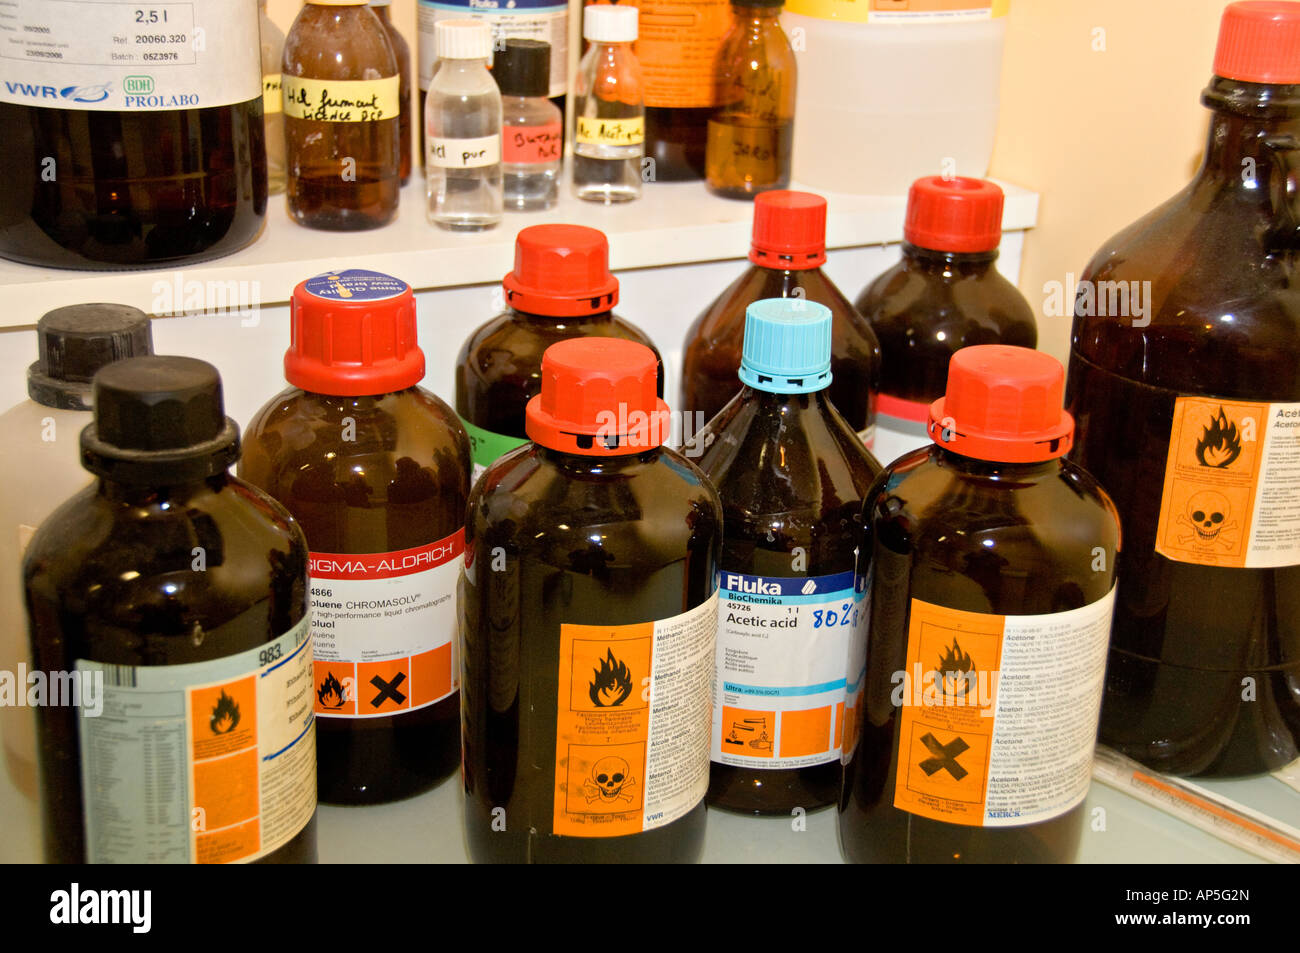 Bottiglie chimiche immagini e fotografie stock ad alta risoluzione - Alamy